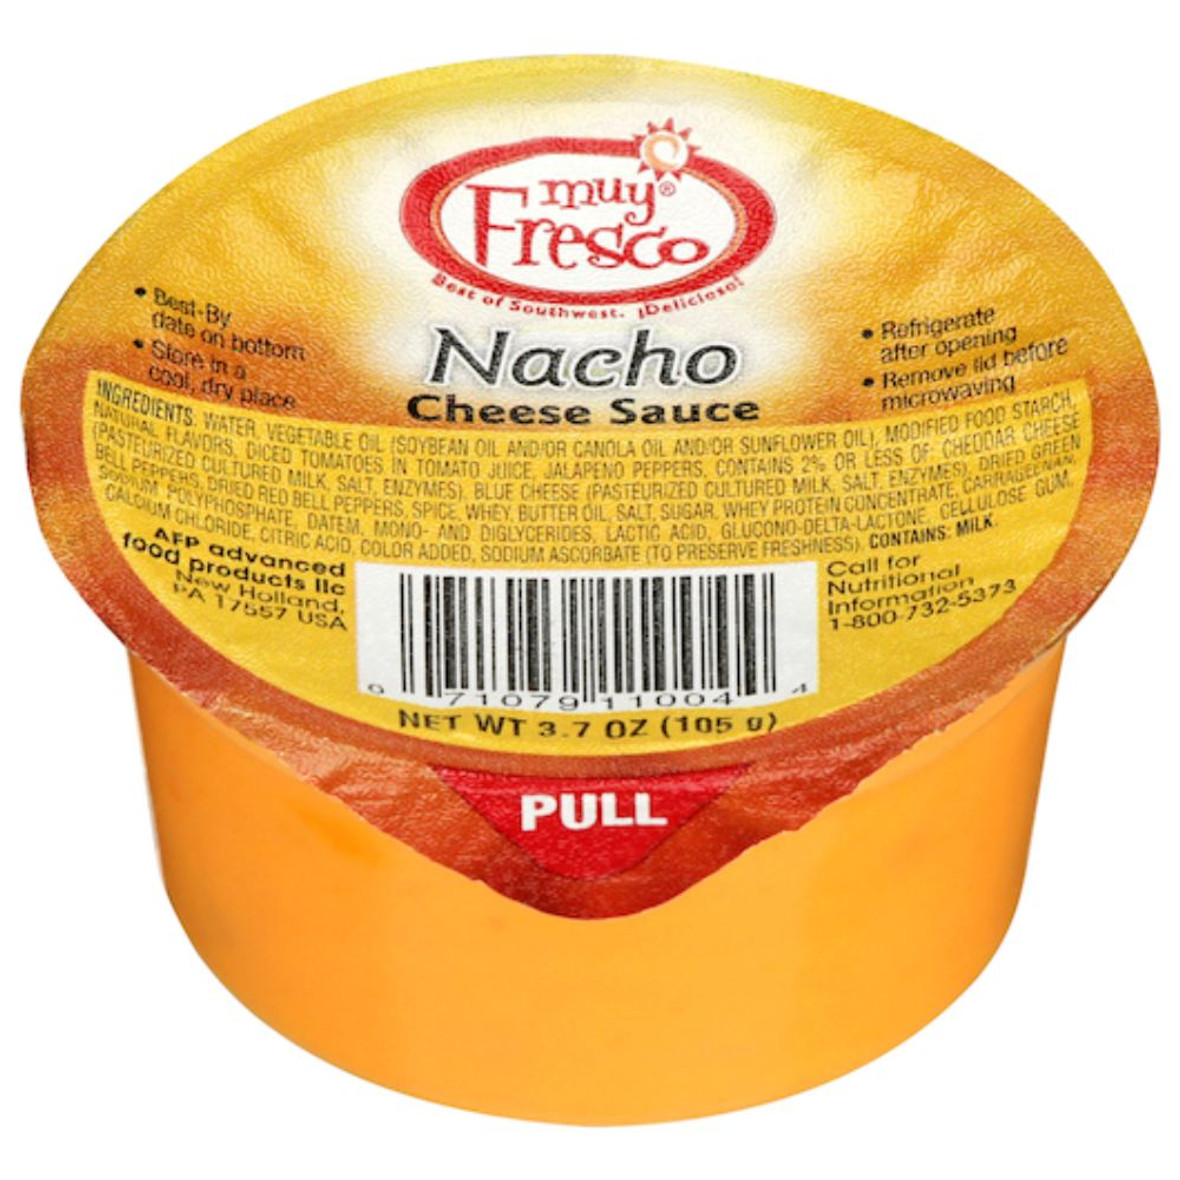 Muy Fresco Nacho Cheese Sauce